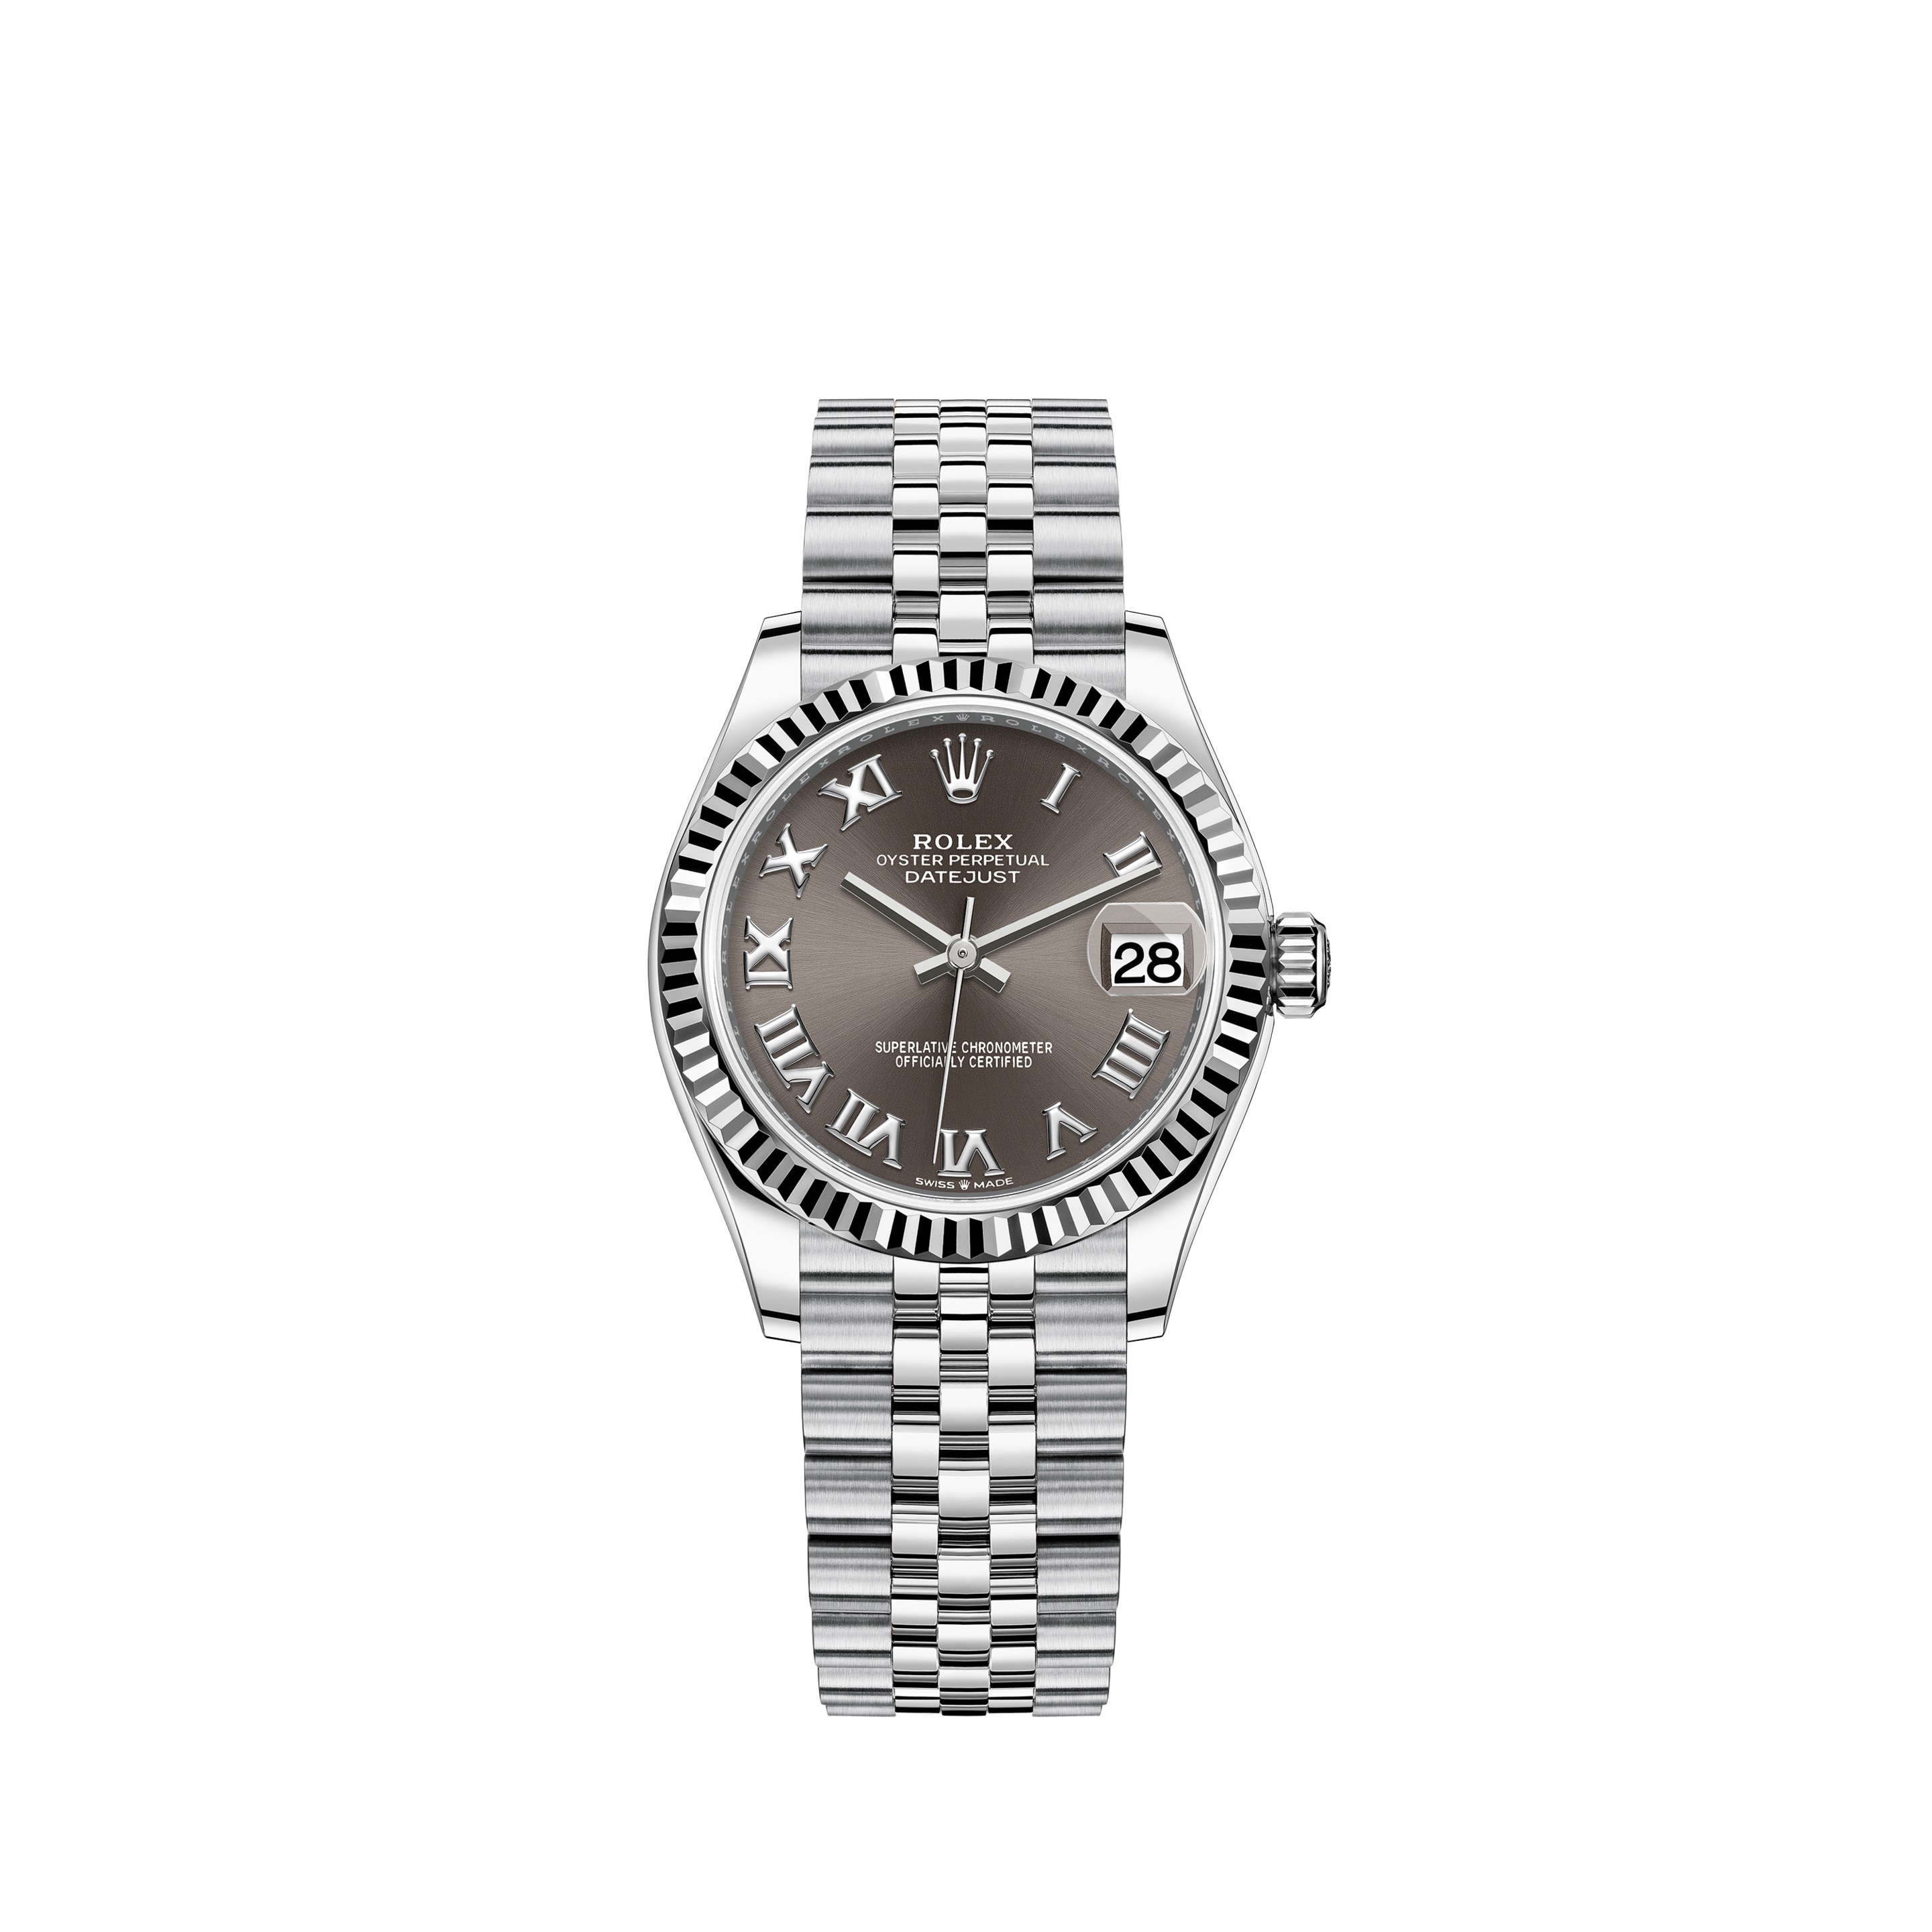 Datejust 31 278274 White Gold & Stainless Steel Watch (Dark Grey)